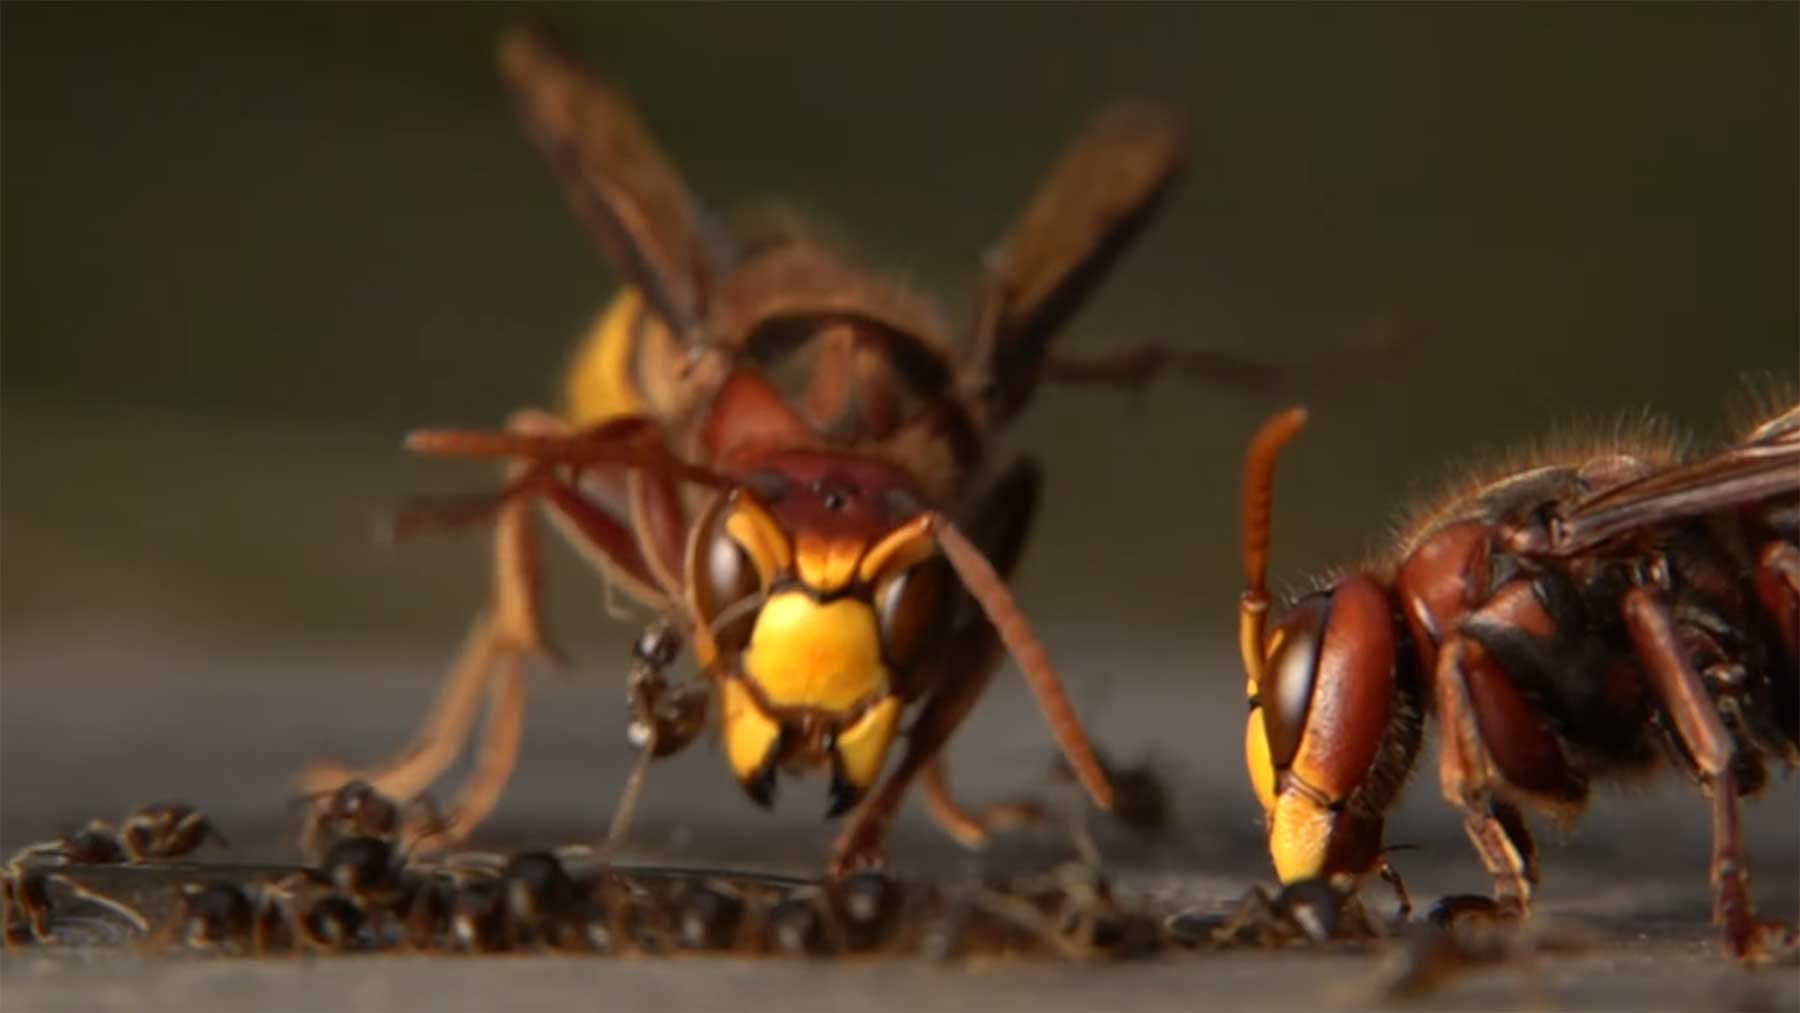 Hornissen vs. Ameisen in Zeitlupe